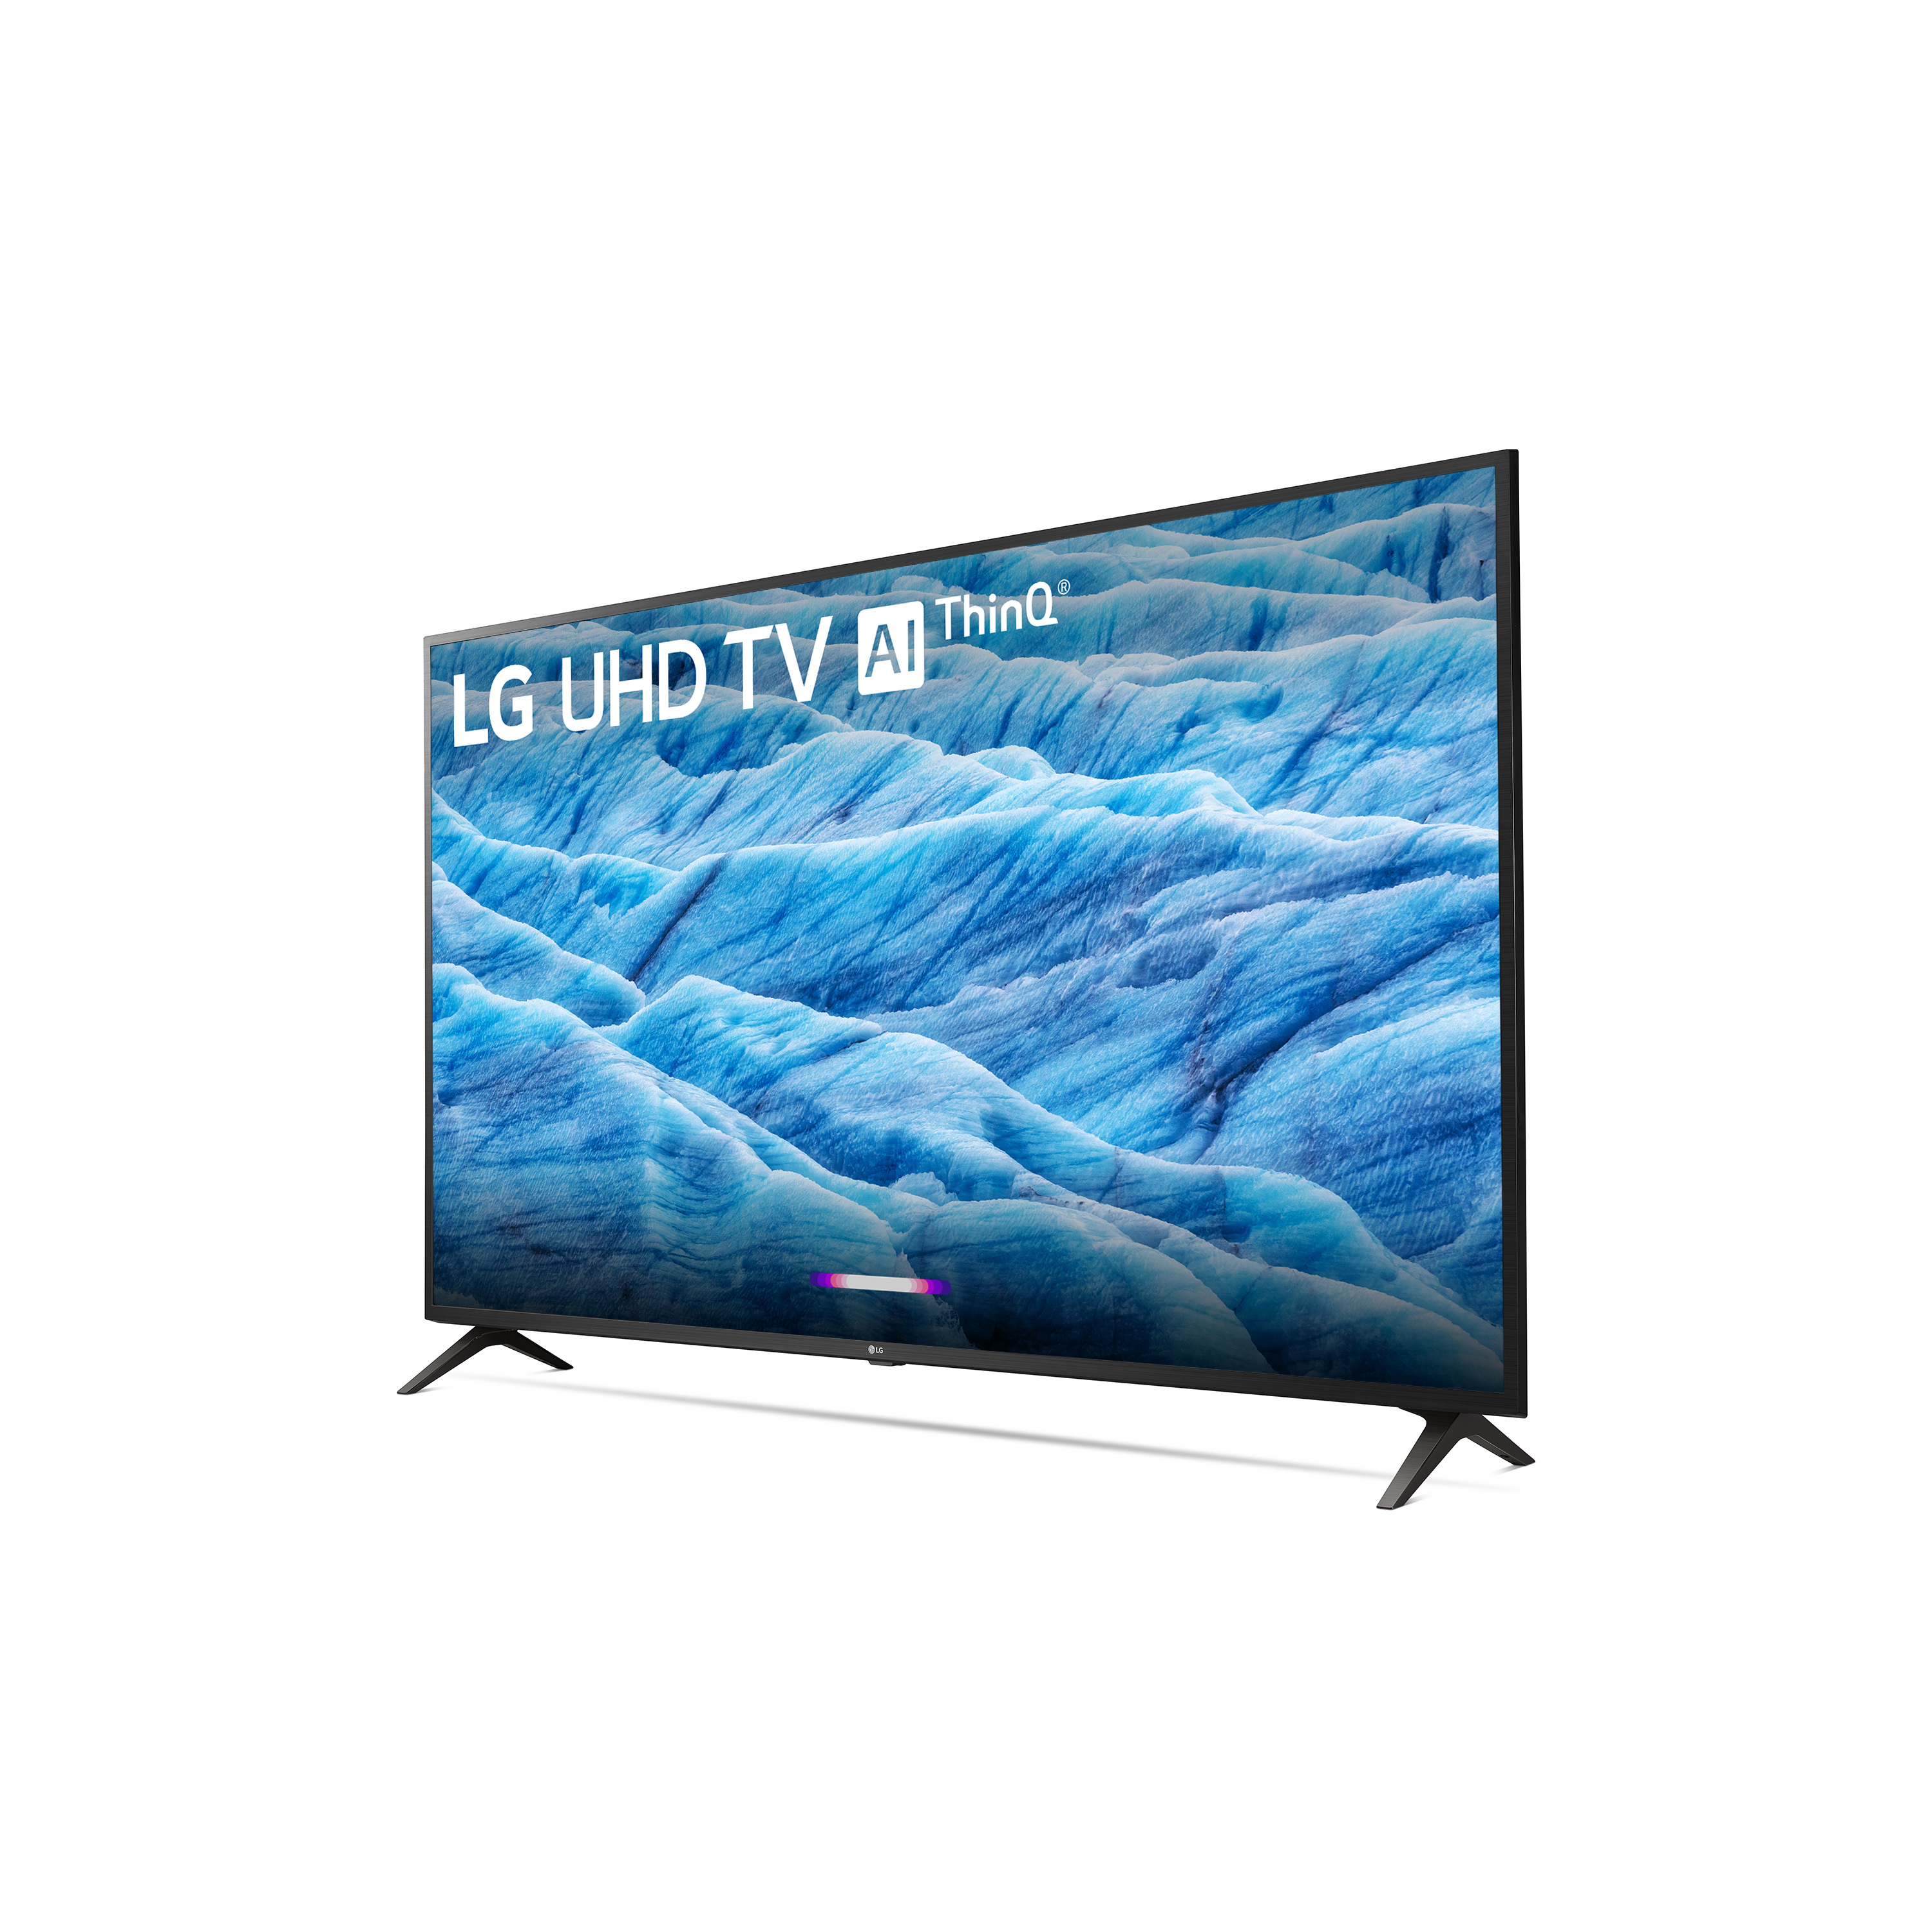 LG 65" Class 4K (2160P) Ultra HD Smart LED HDR TV 65UM7300PUA 2019 Model - image 4 of 14